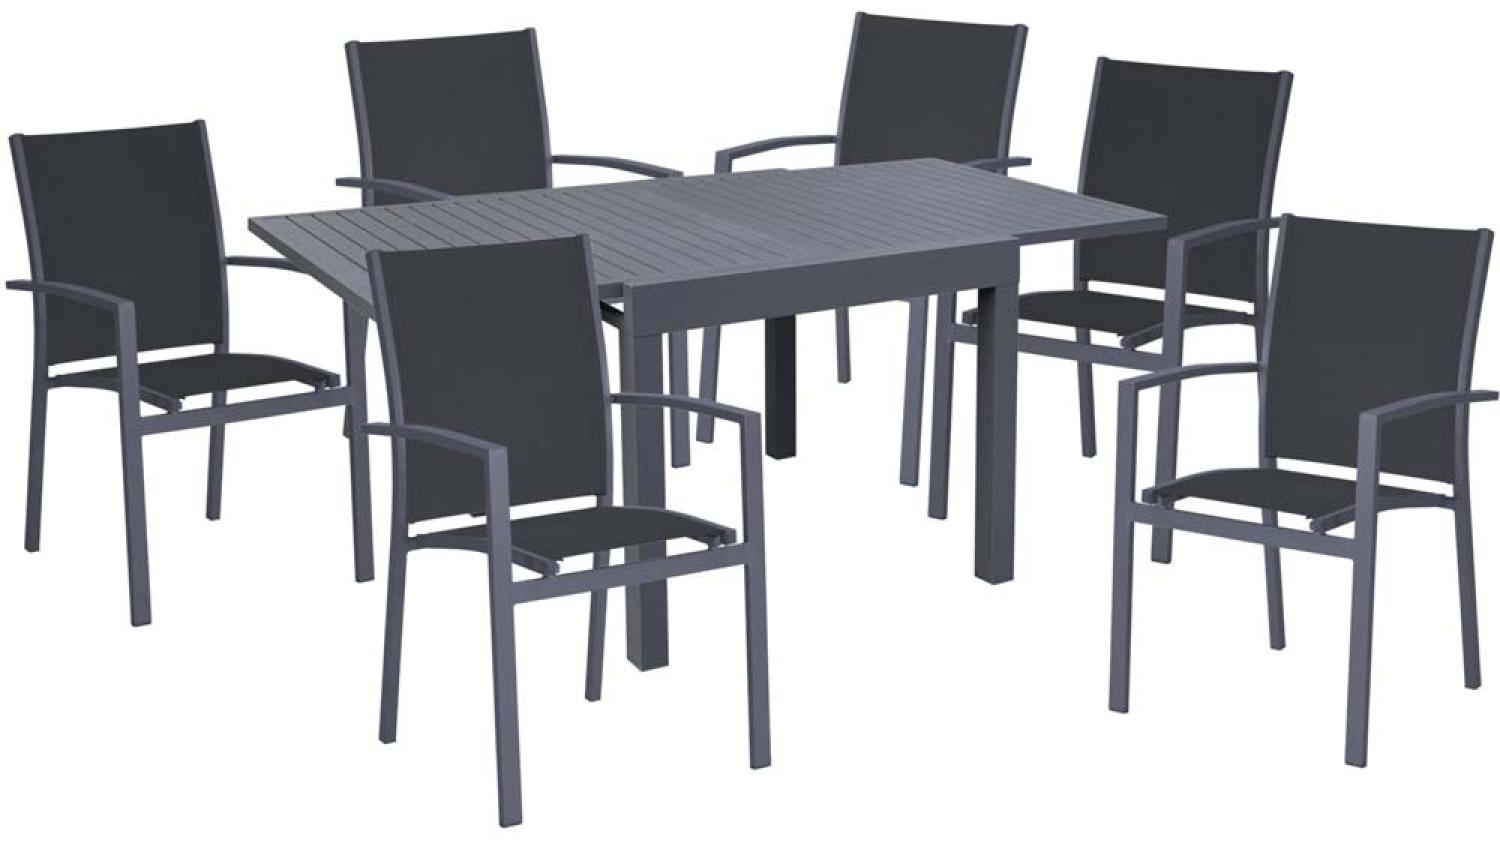 Tischgruppe ELENA, 7 teilig, Aluminium, dunkelgrau Bild 1